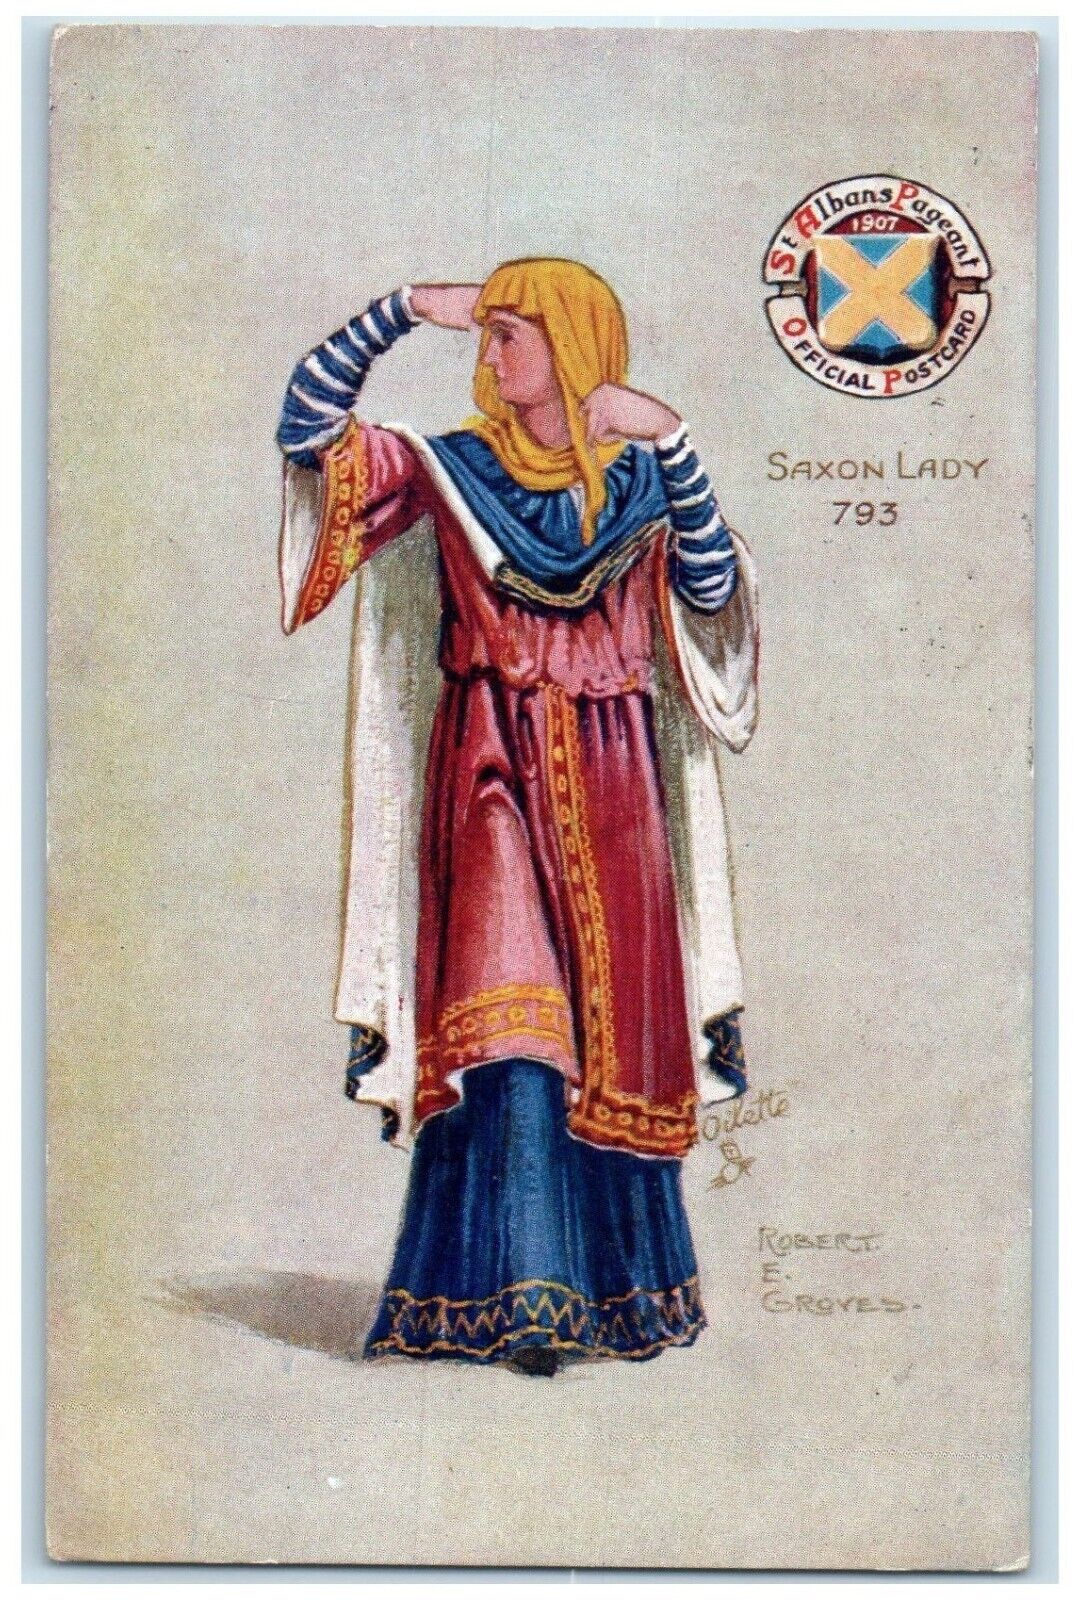 1909 Saxon Lady Robert Groves St. Albans Pageant Oilette Tuck\'s Antique Postcard